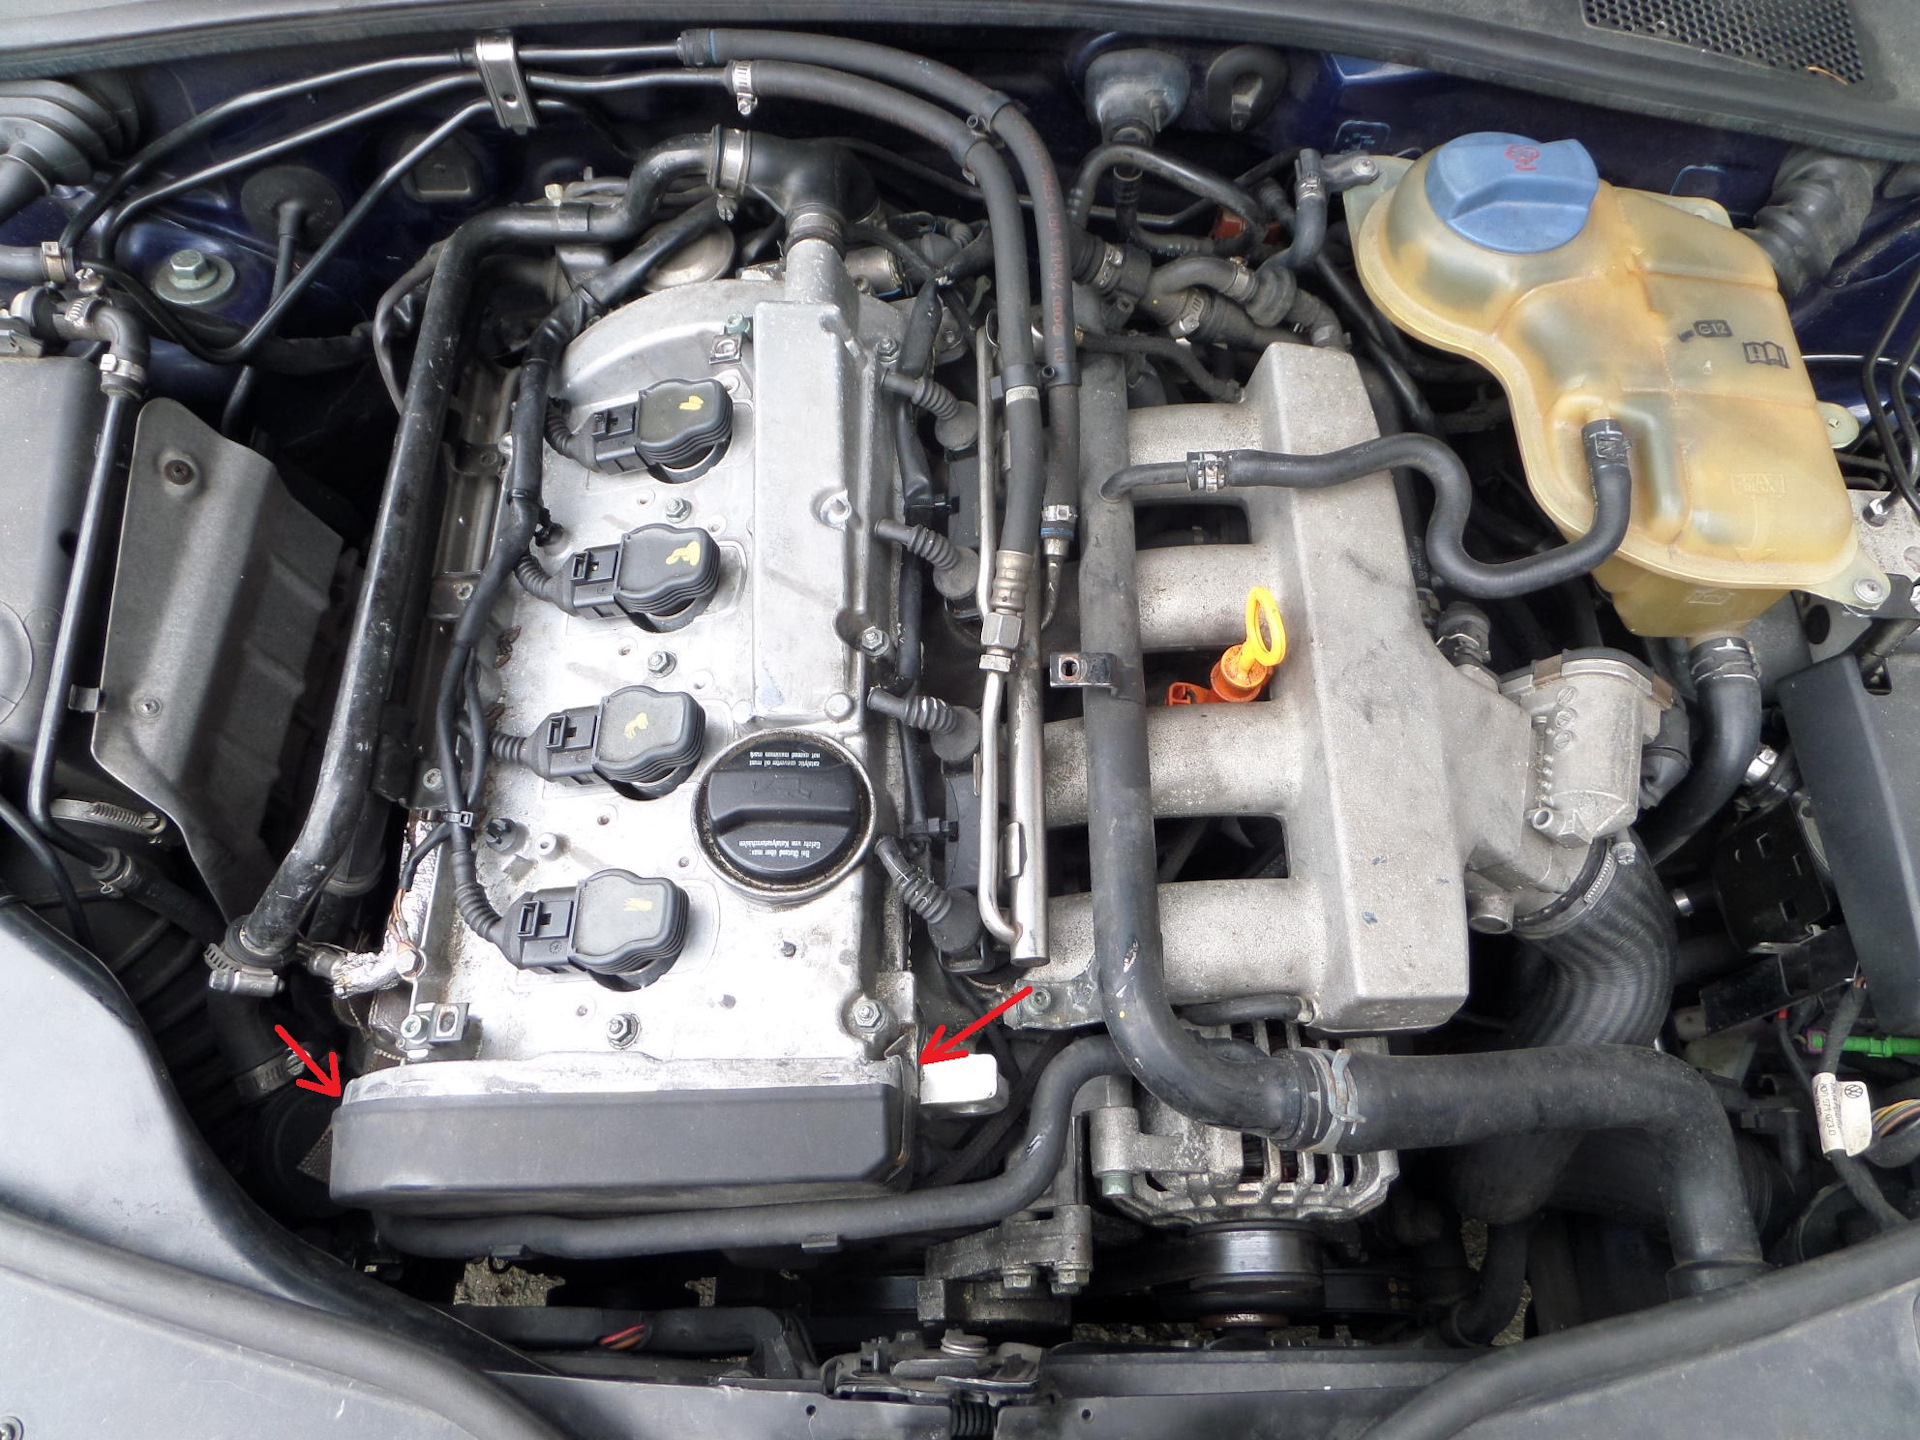 Купить двигатель на фольксваген пассат б5. Пассат b5 1.8 турбо. Двигатель Фольксваген Пассат б5 1.8 турбо. Двигатель АЕБ Пассат б5 1.8 турбо. VW b5 1.8t.